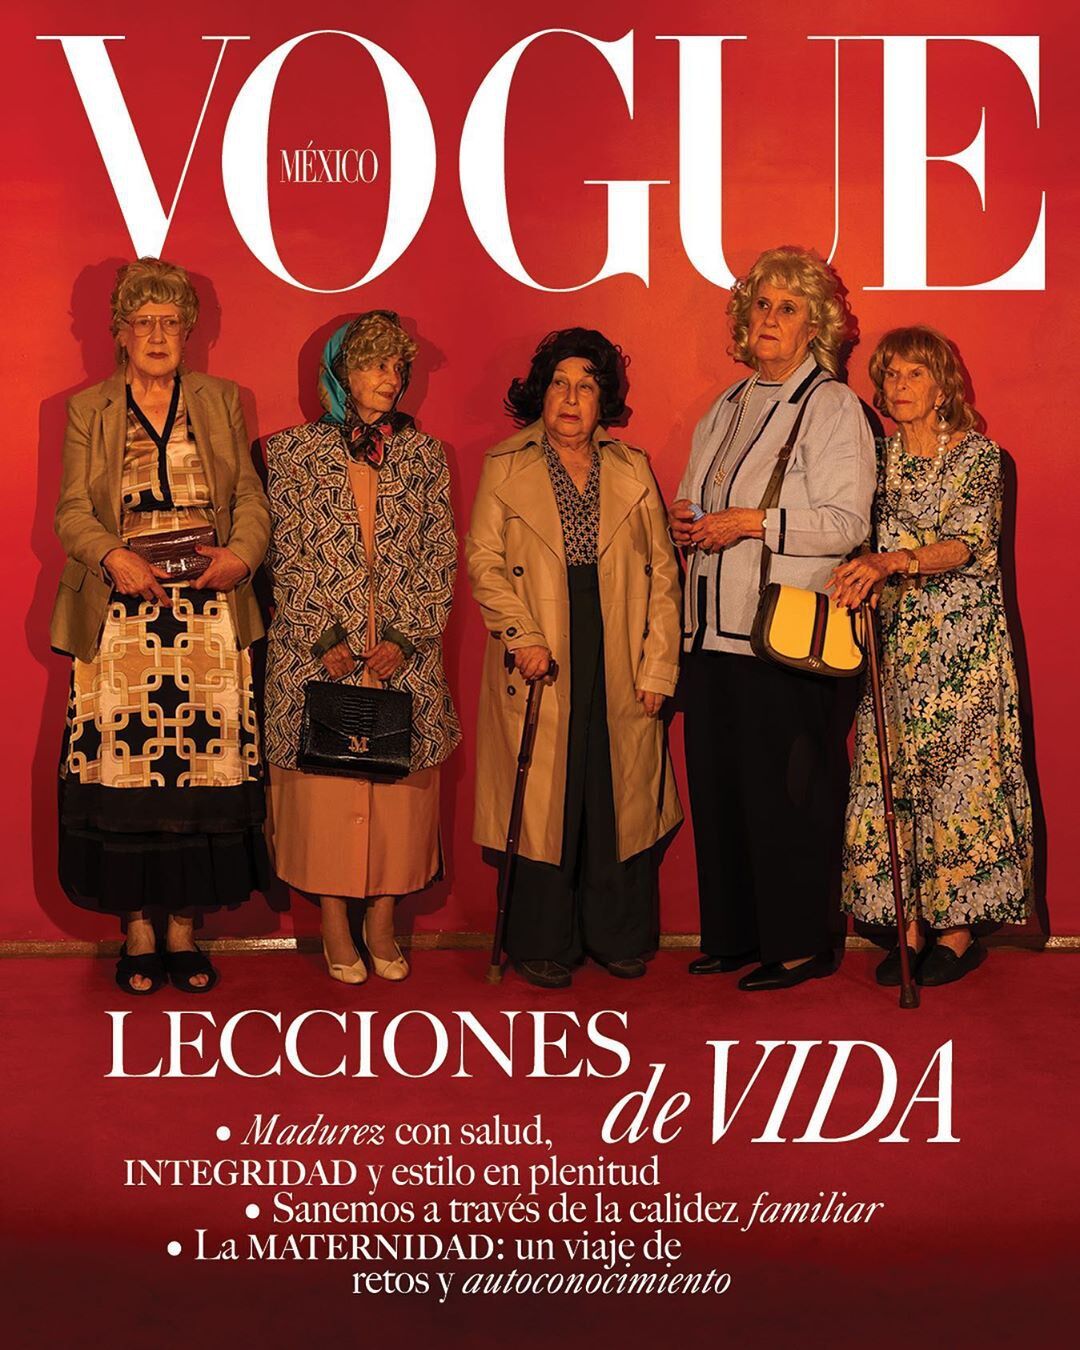 Пенсионерки попали на обложку Vogue из-за пандемии коронавируса